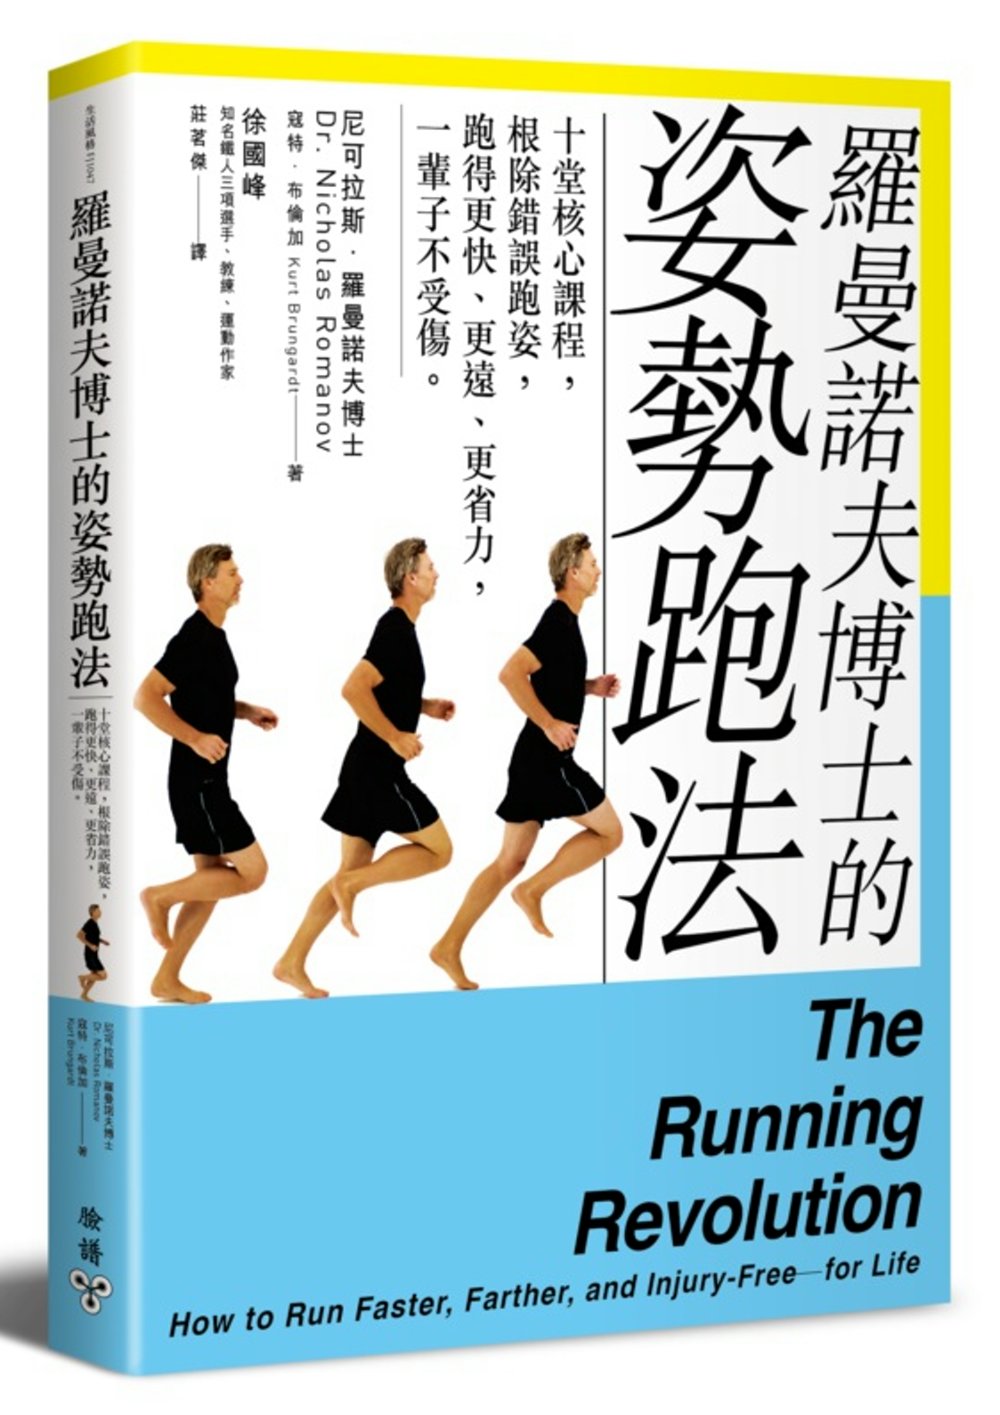 羅曼諾夫博士的姿勢跑法：十堂核心課程，根除錯誤跑姿，跑得更快、更遠、更省力，一輩子不受傷。